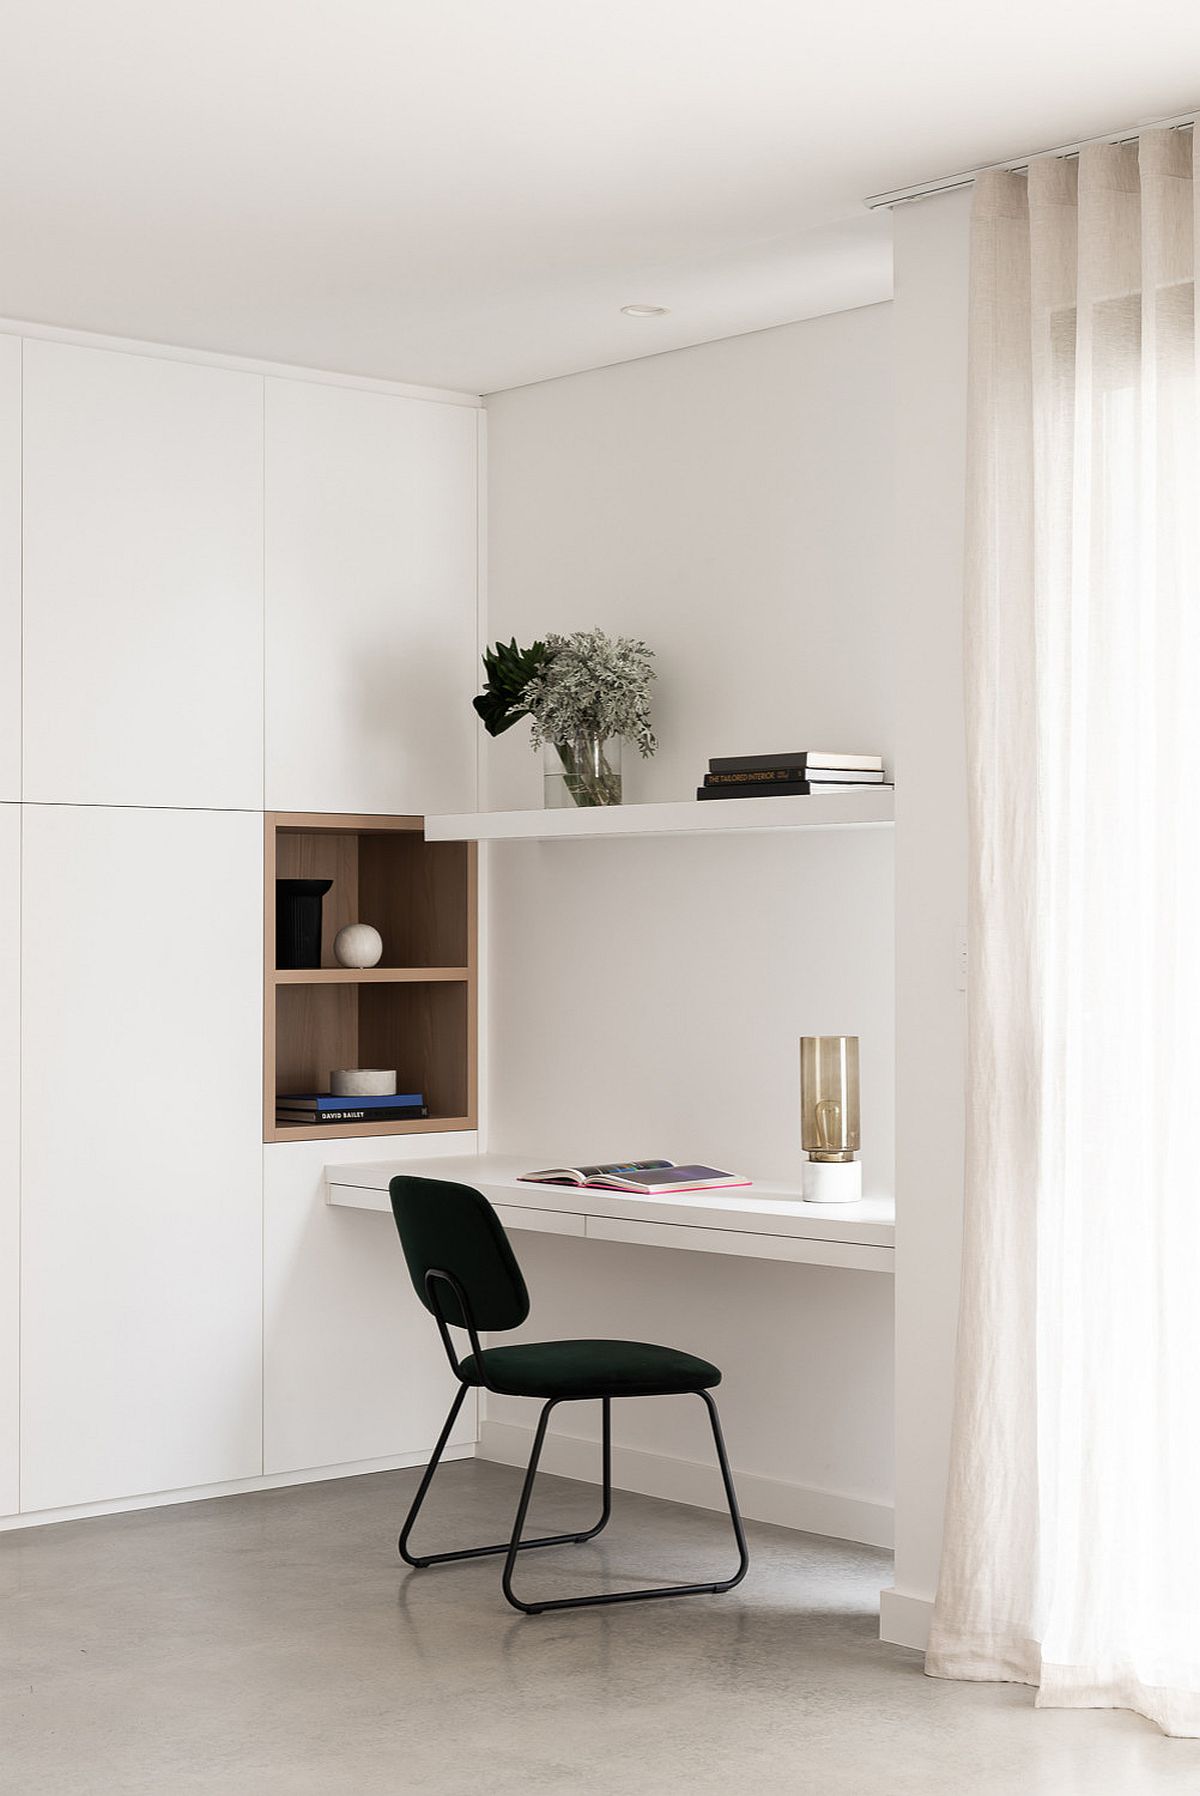 Phòng làm việc này đơn giản nhưng đẹp với bàn kệ gắn tường tiết kiệm không gian sàn.